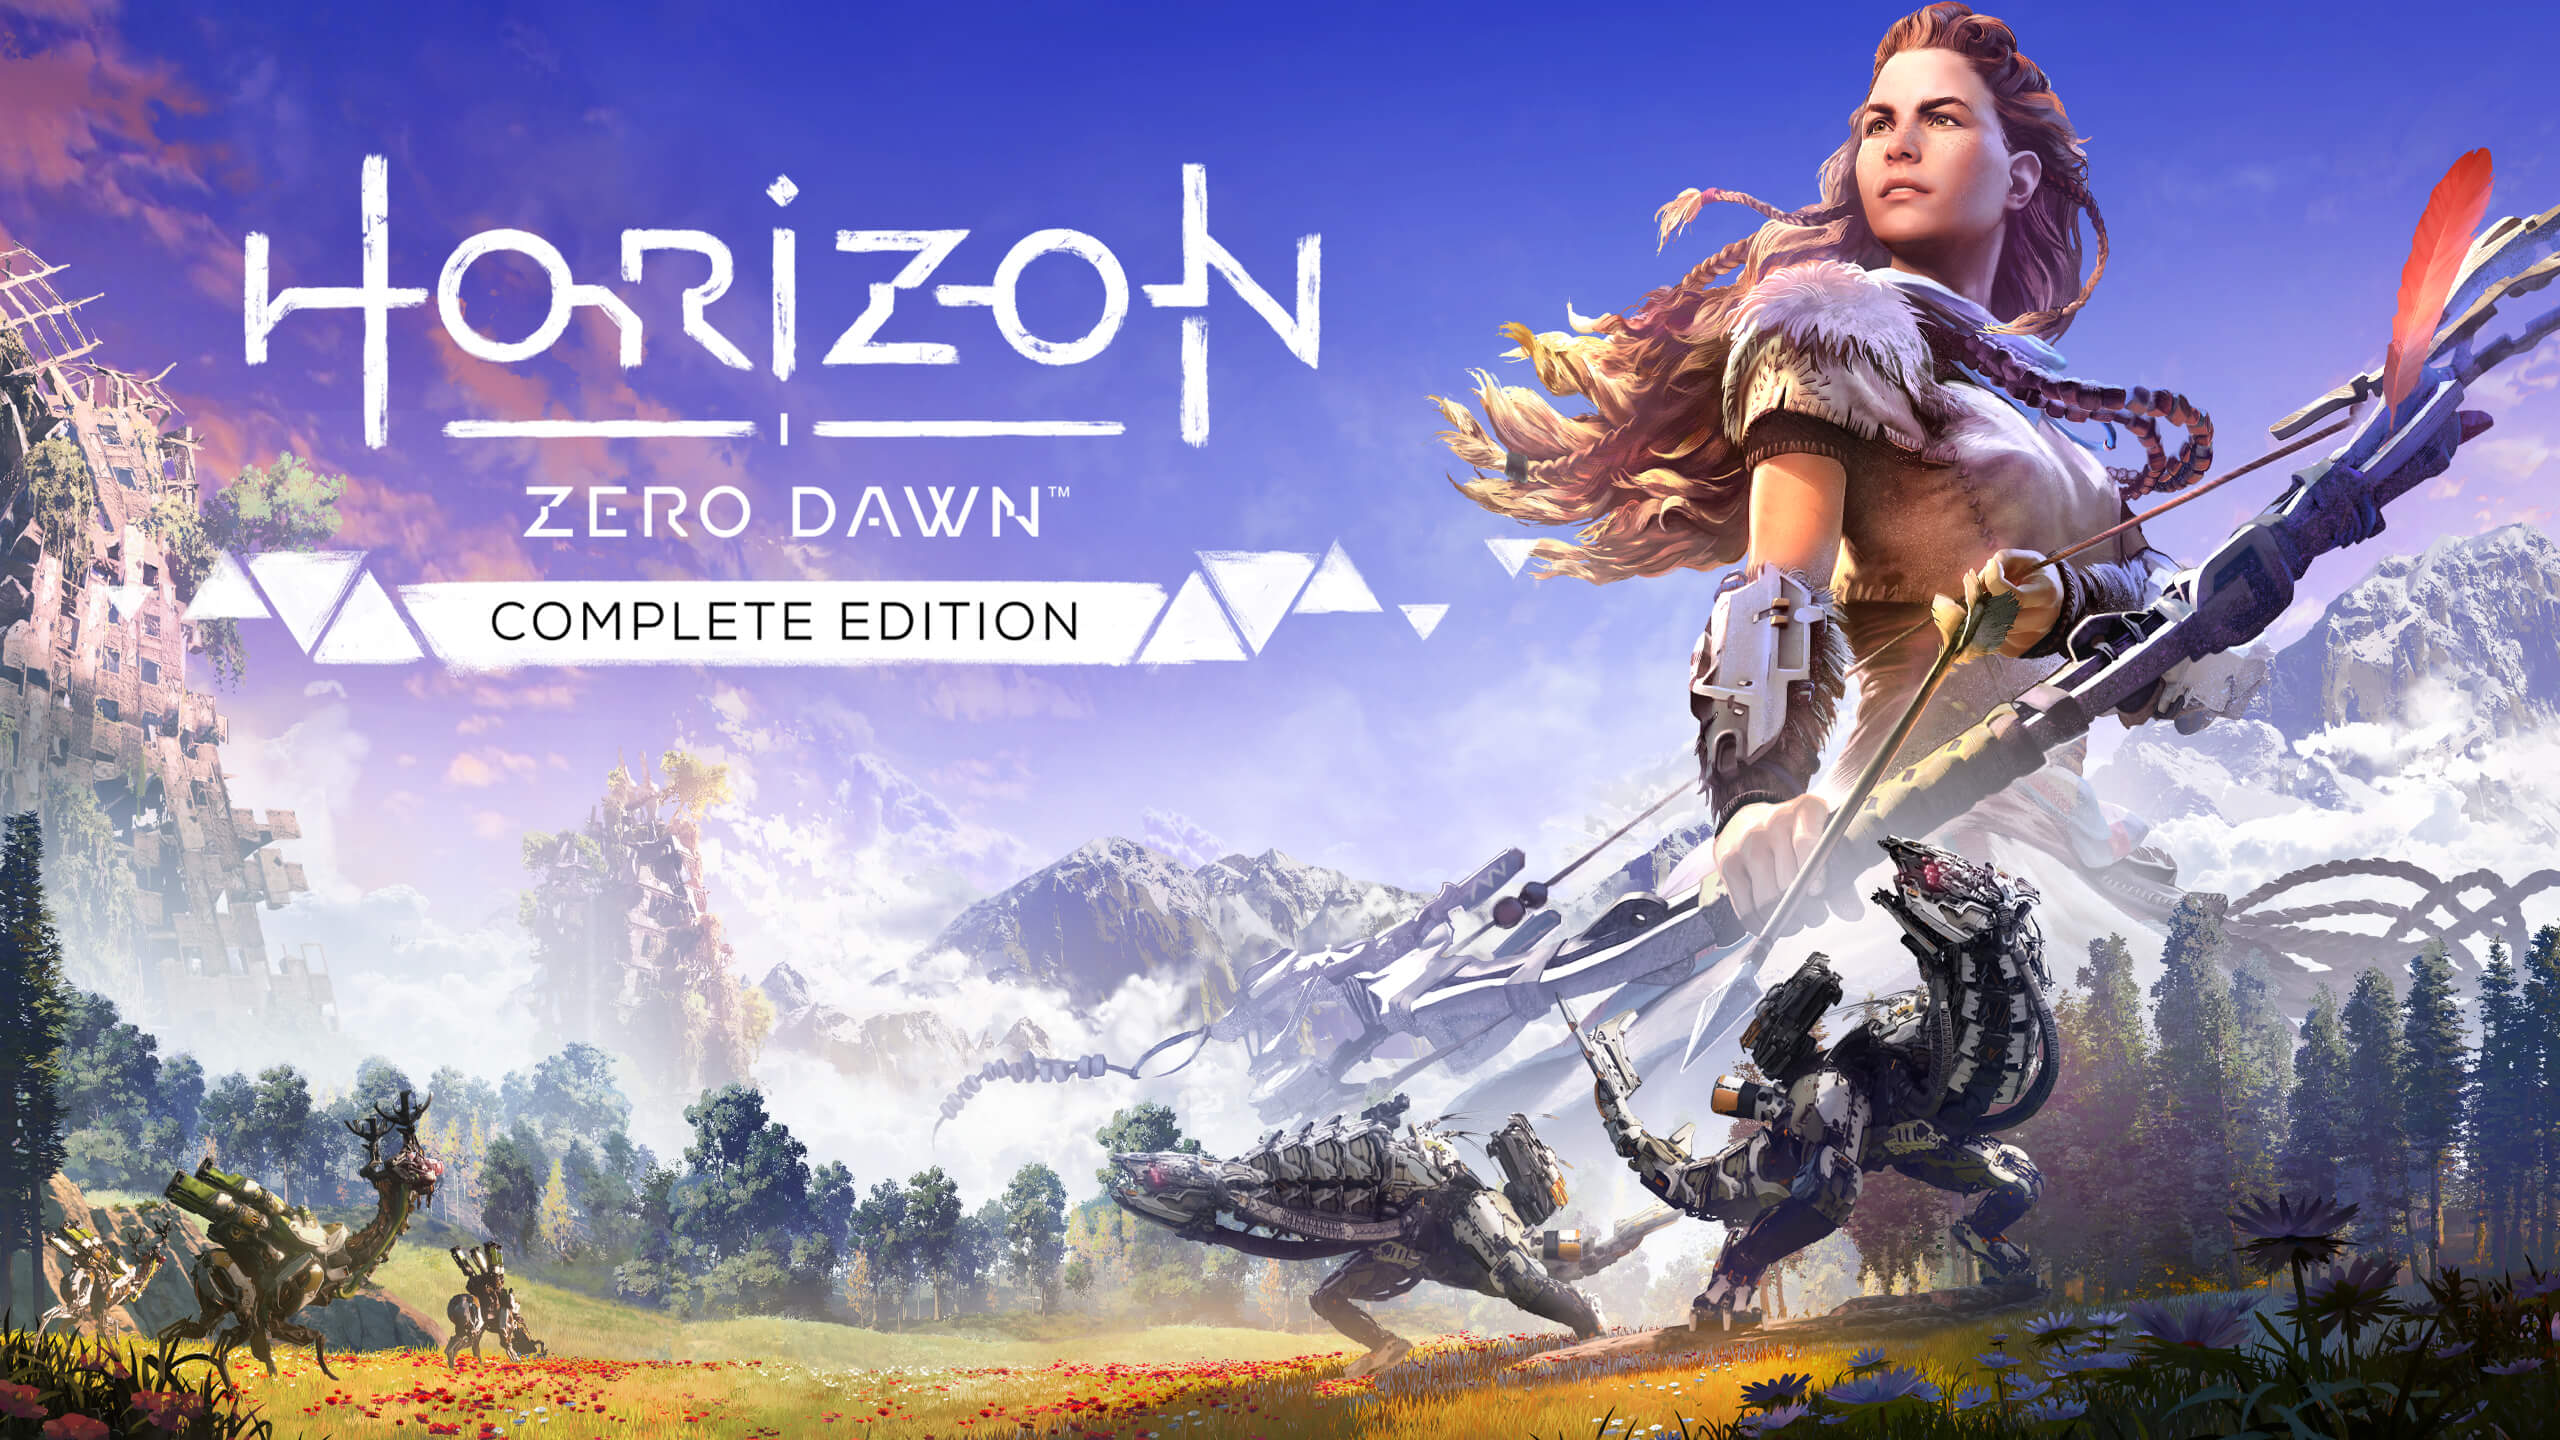 Bilder von Horizon Multiplayer-Spiel geleakt Titel